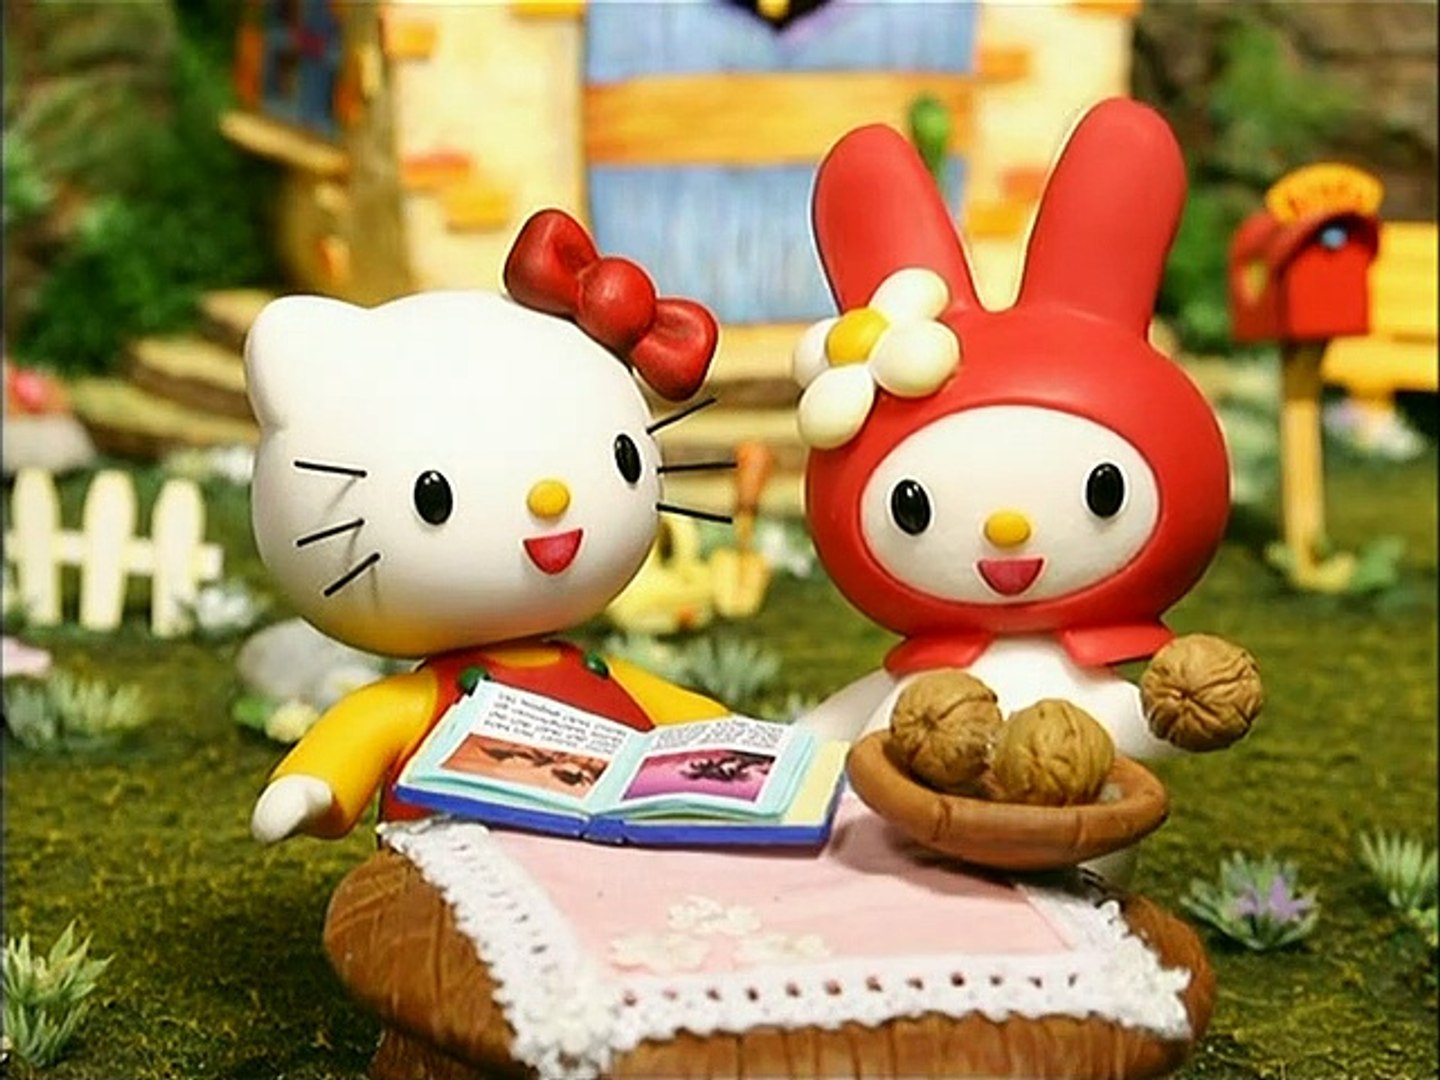 Il villaggio di Hello Kitty episodio 1 - Rompiamo le noci! - Video  Dailymotion